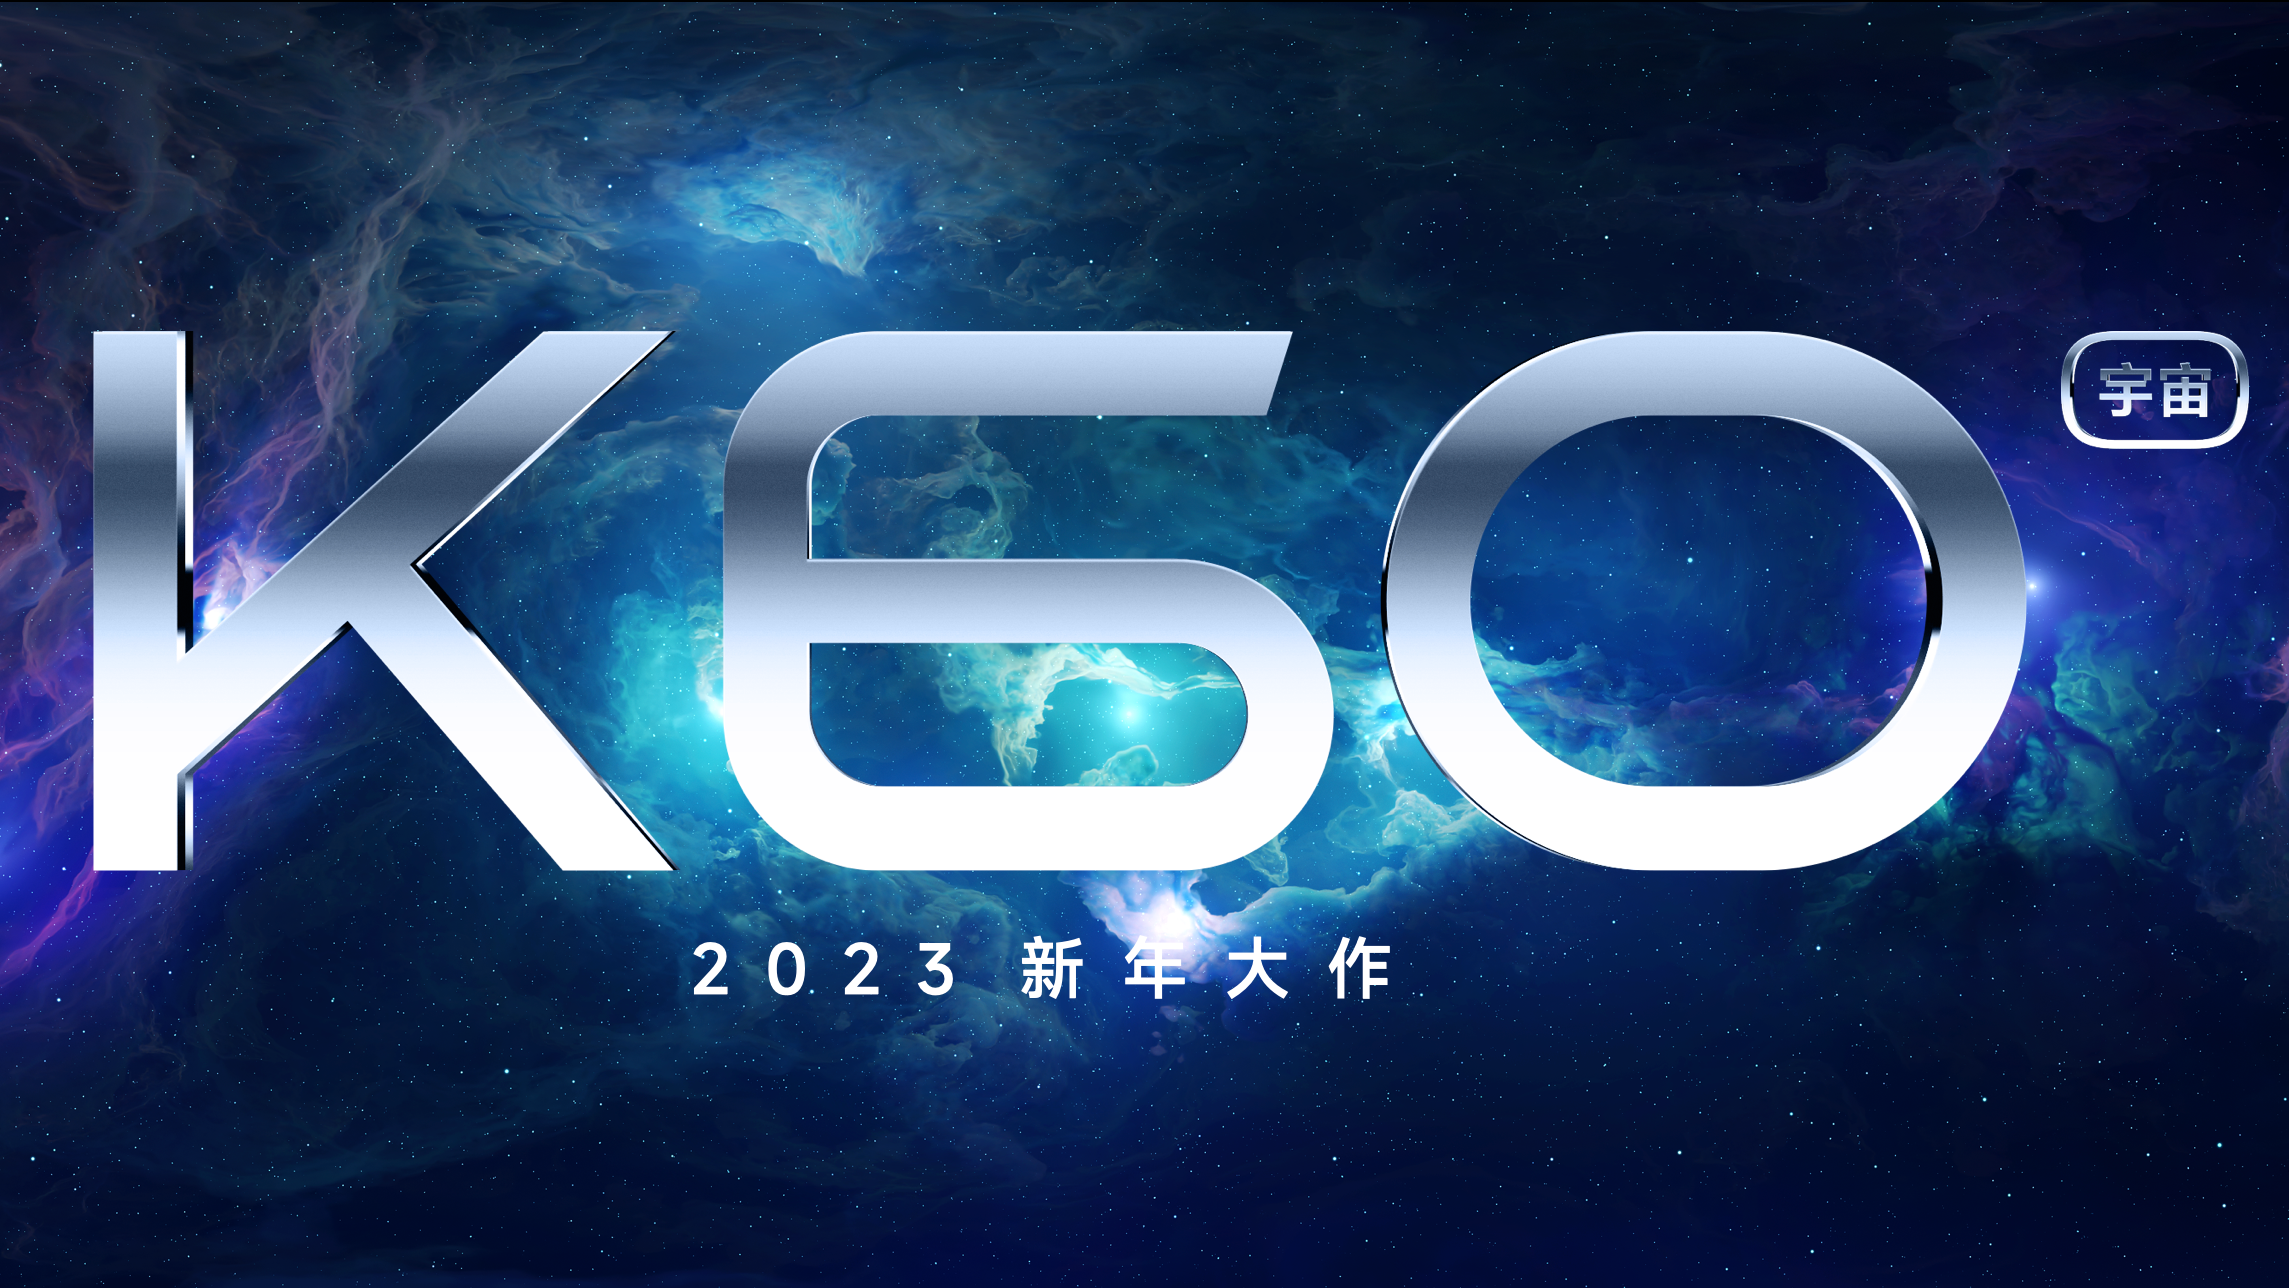 新宇宙——K60系列 20221220155727